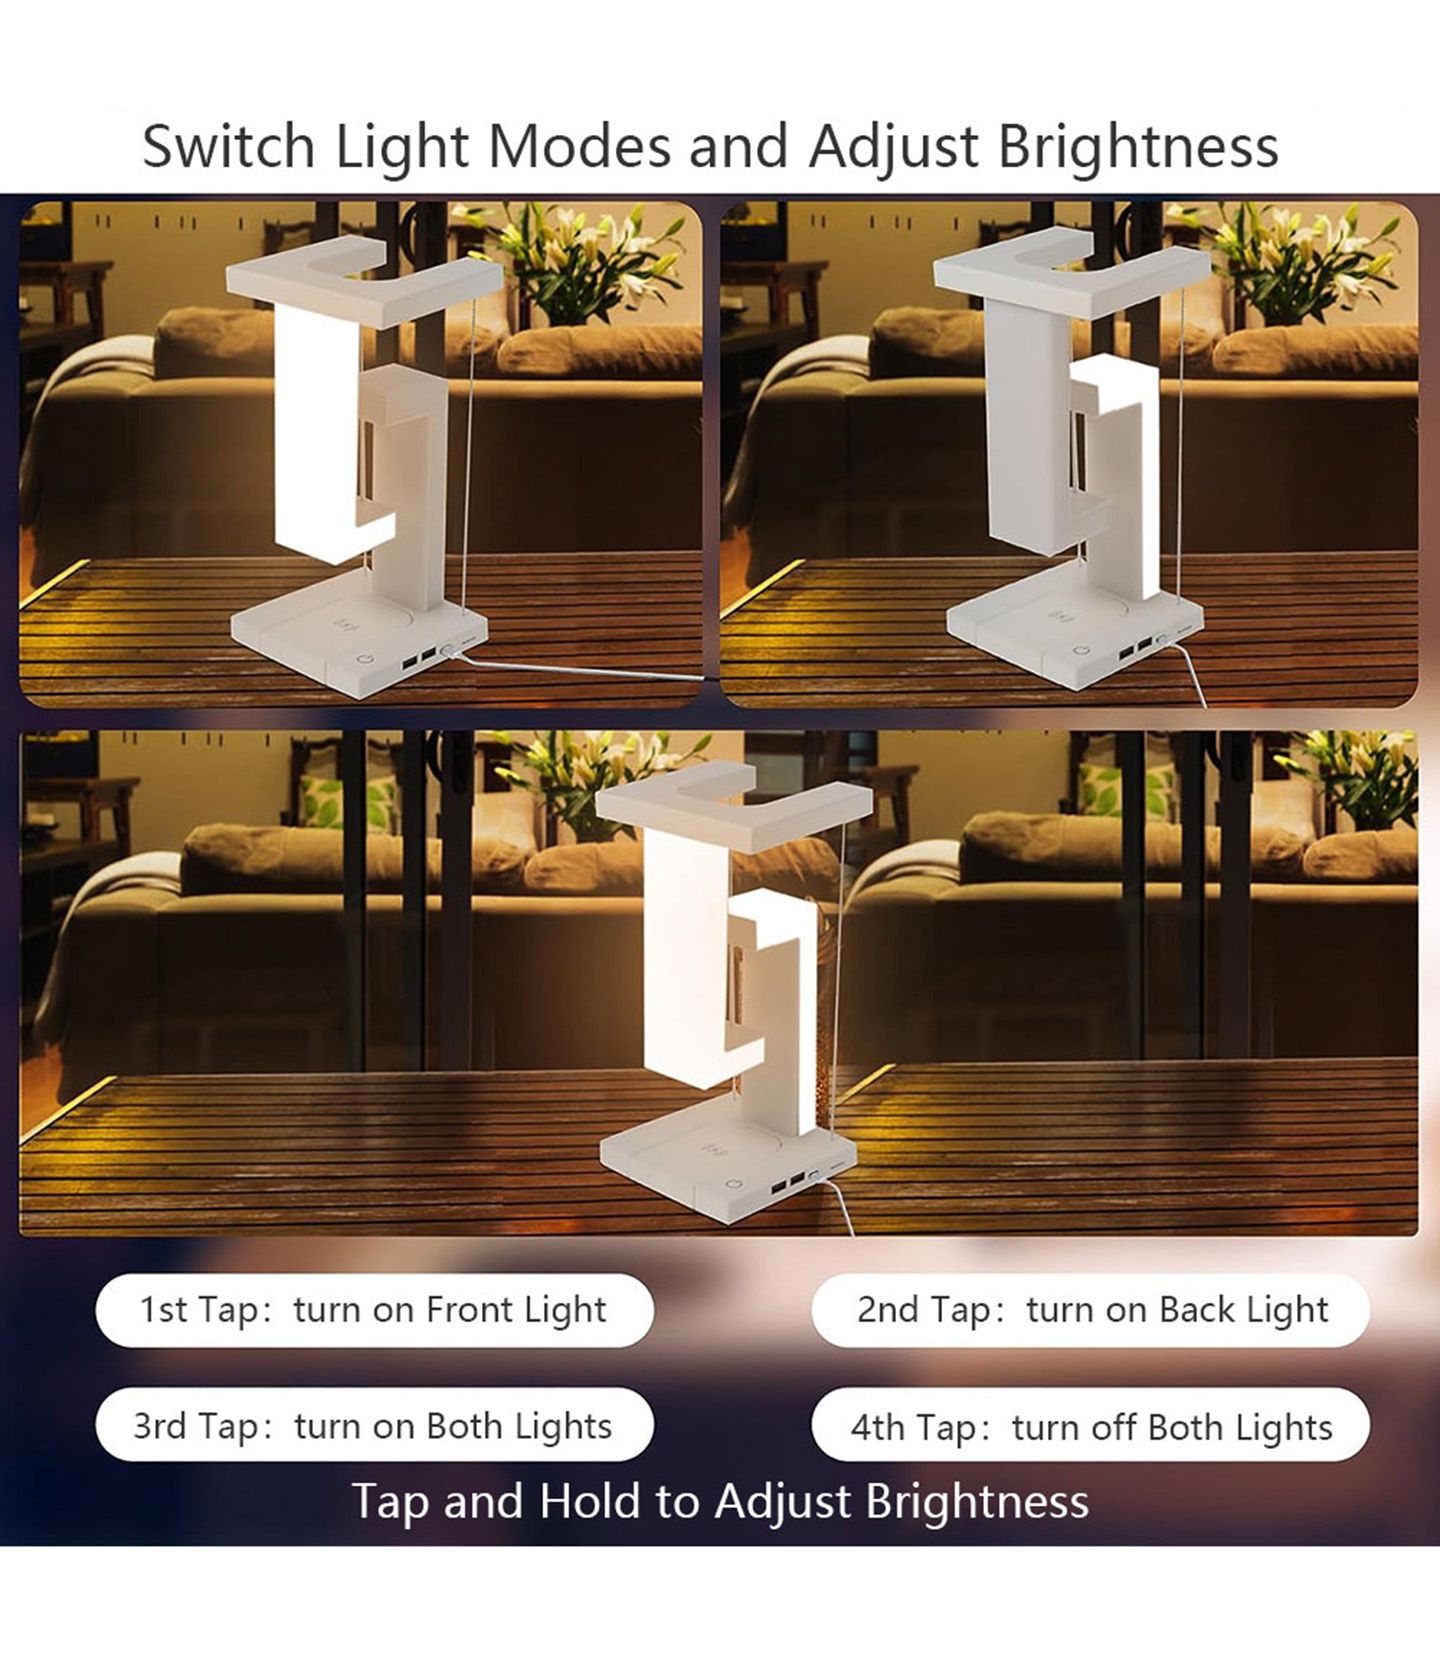 Anti-gravité Suspension Lampe de Table USB Rechargeable Lampe LED élégante  Décoration de bureau d'étude